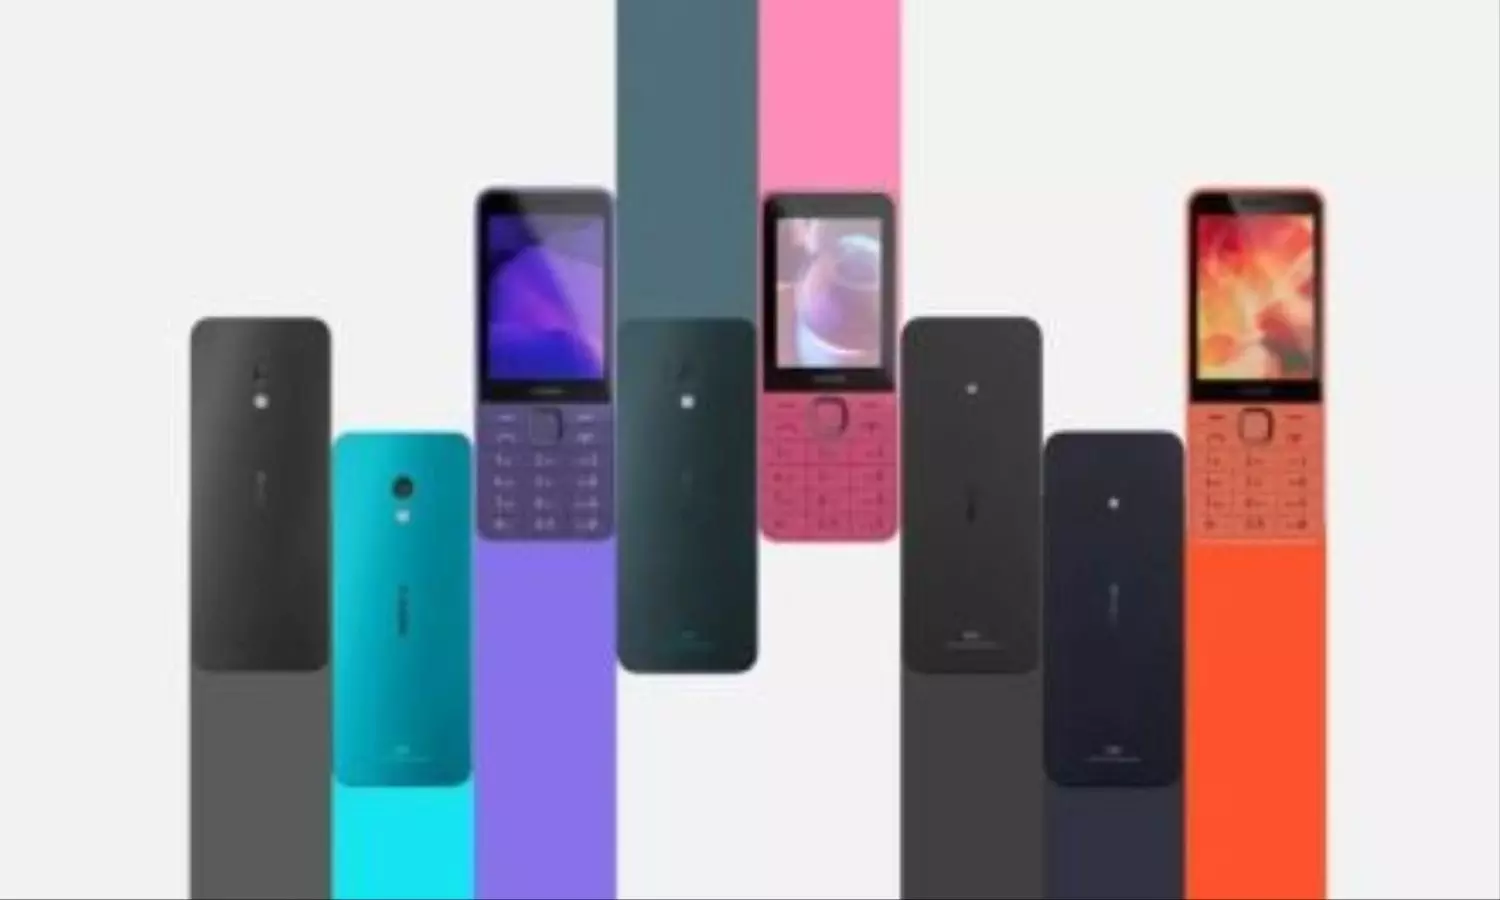 Nokia के लॉन्च किए तीन नए फोन्स, जानें कीमत और अन्य फीचर्स